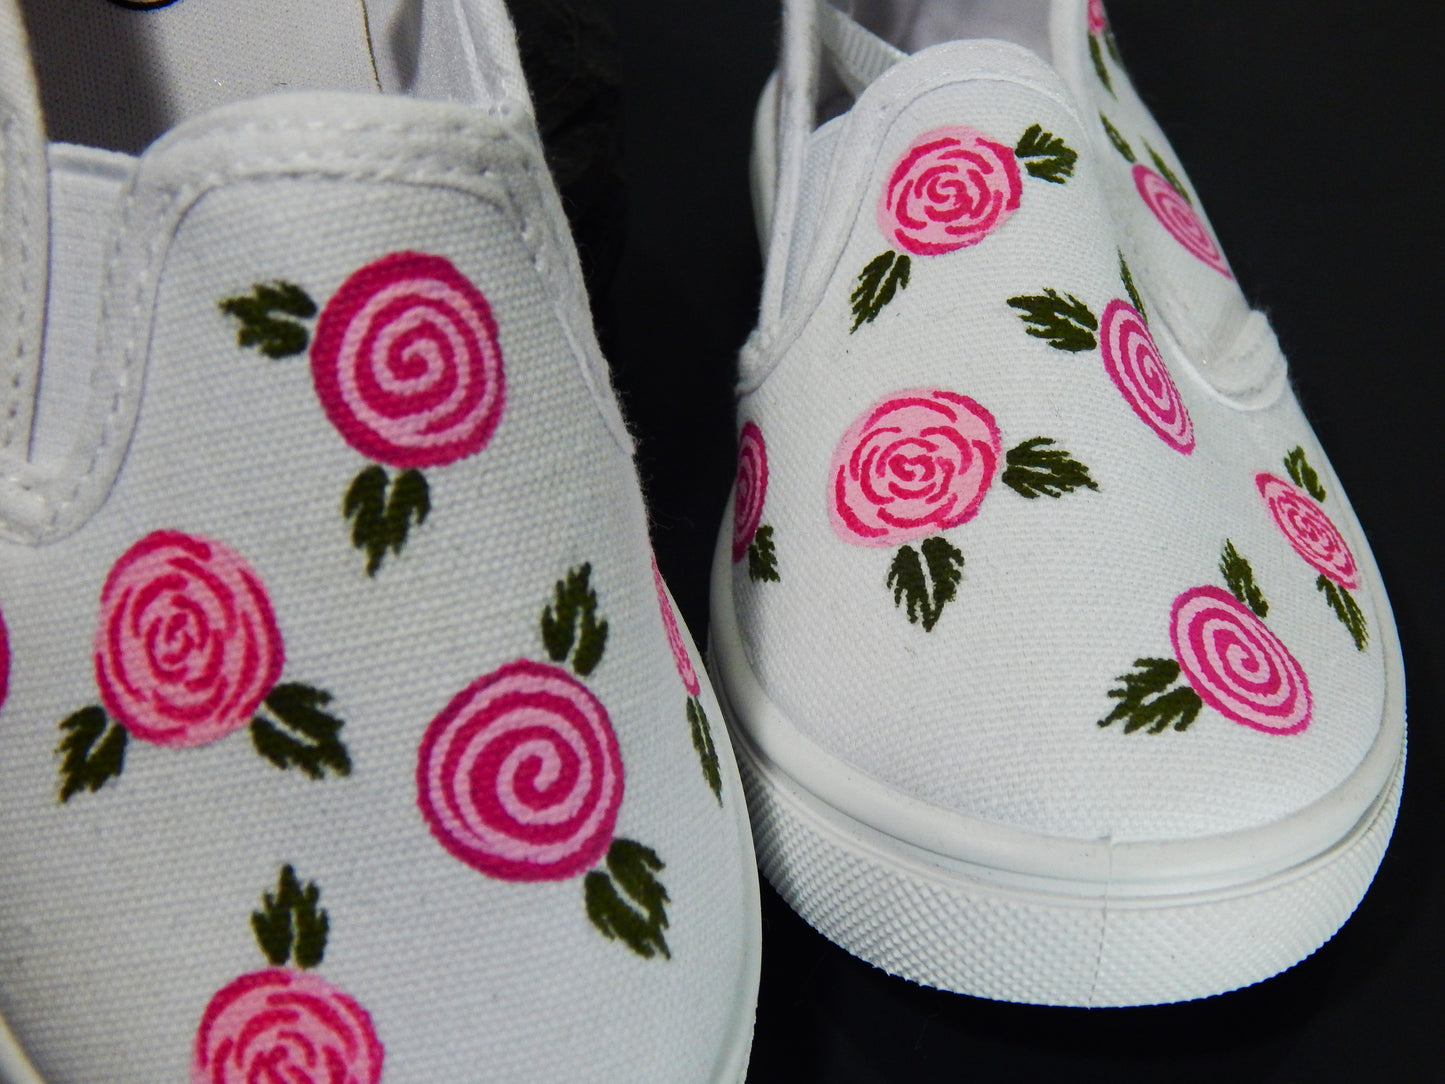 Rose Slip-on Sneakers for Girls